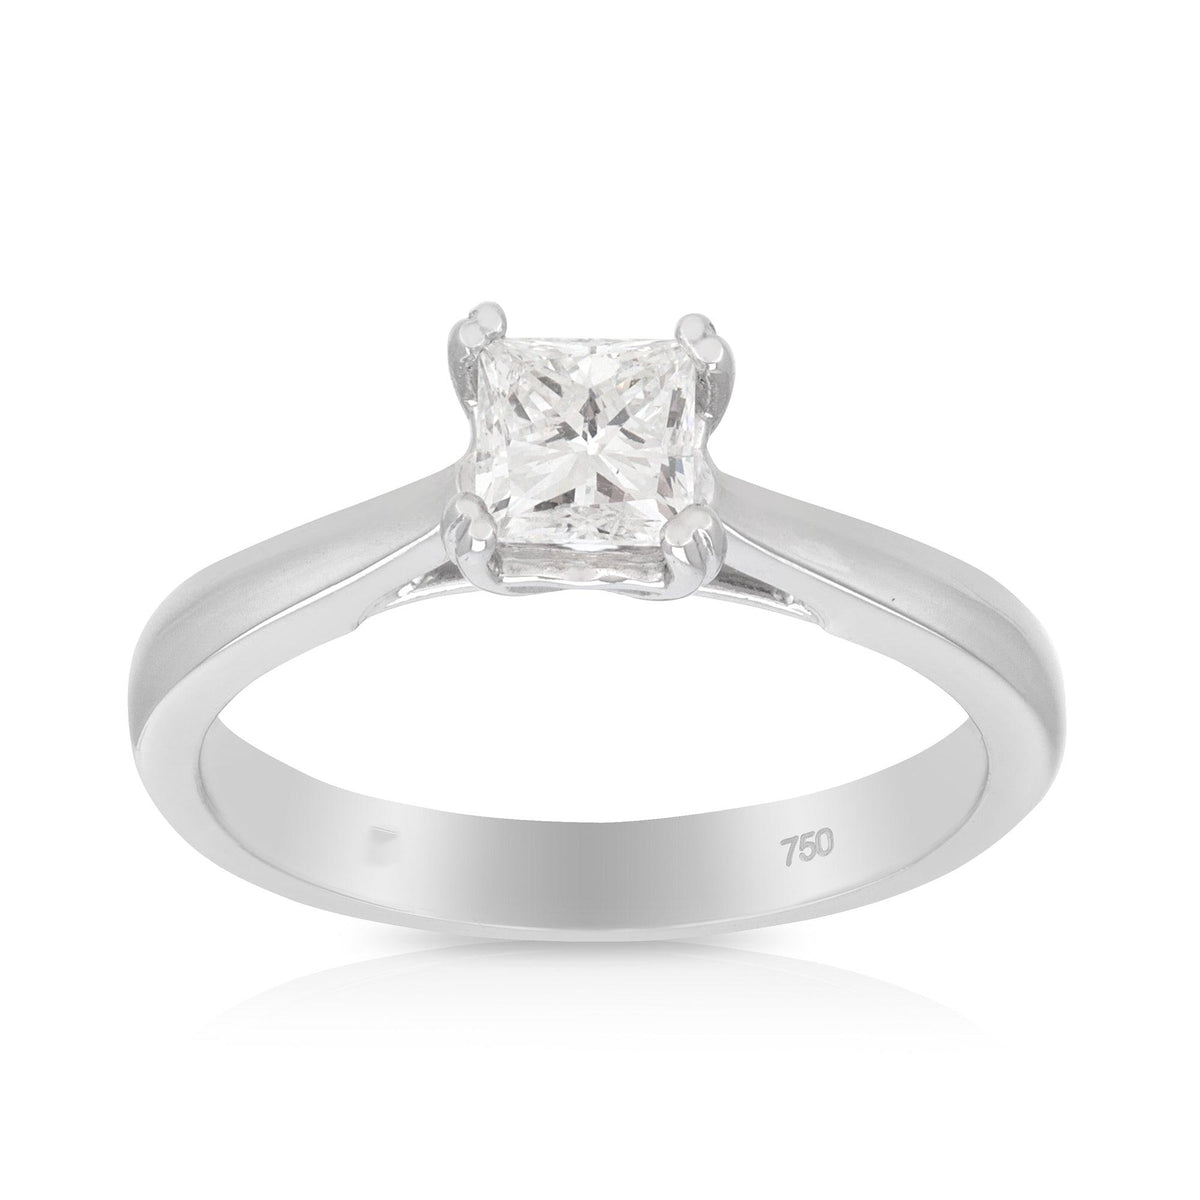 Princess Cut Diamond Engagement Ring in 18ct White Gold TDW 0.500 - Wallace Bishop